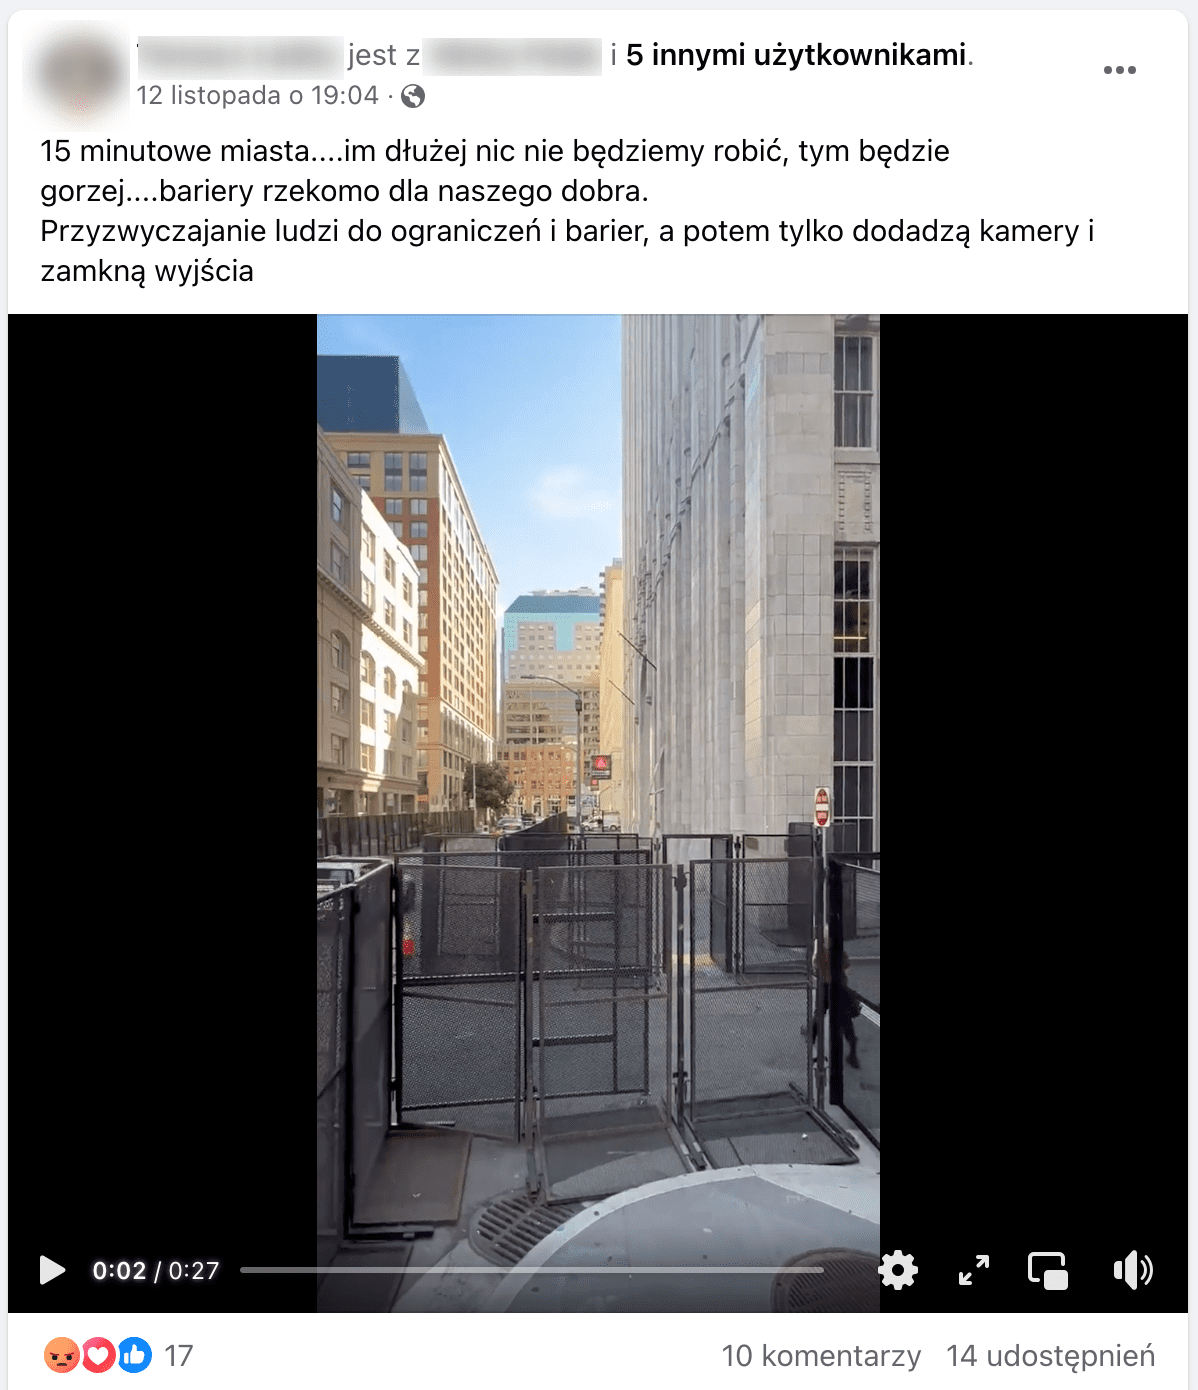 Zrzut ekranu omawianego posta na Facebooku. W kadrze dołączonego filmu jest widok na ulicę pomiędzy wysokimi, jasnymi budynkami. Oddzielono ją od chodników wysokimi barierkami.